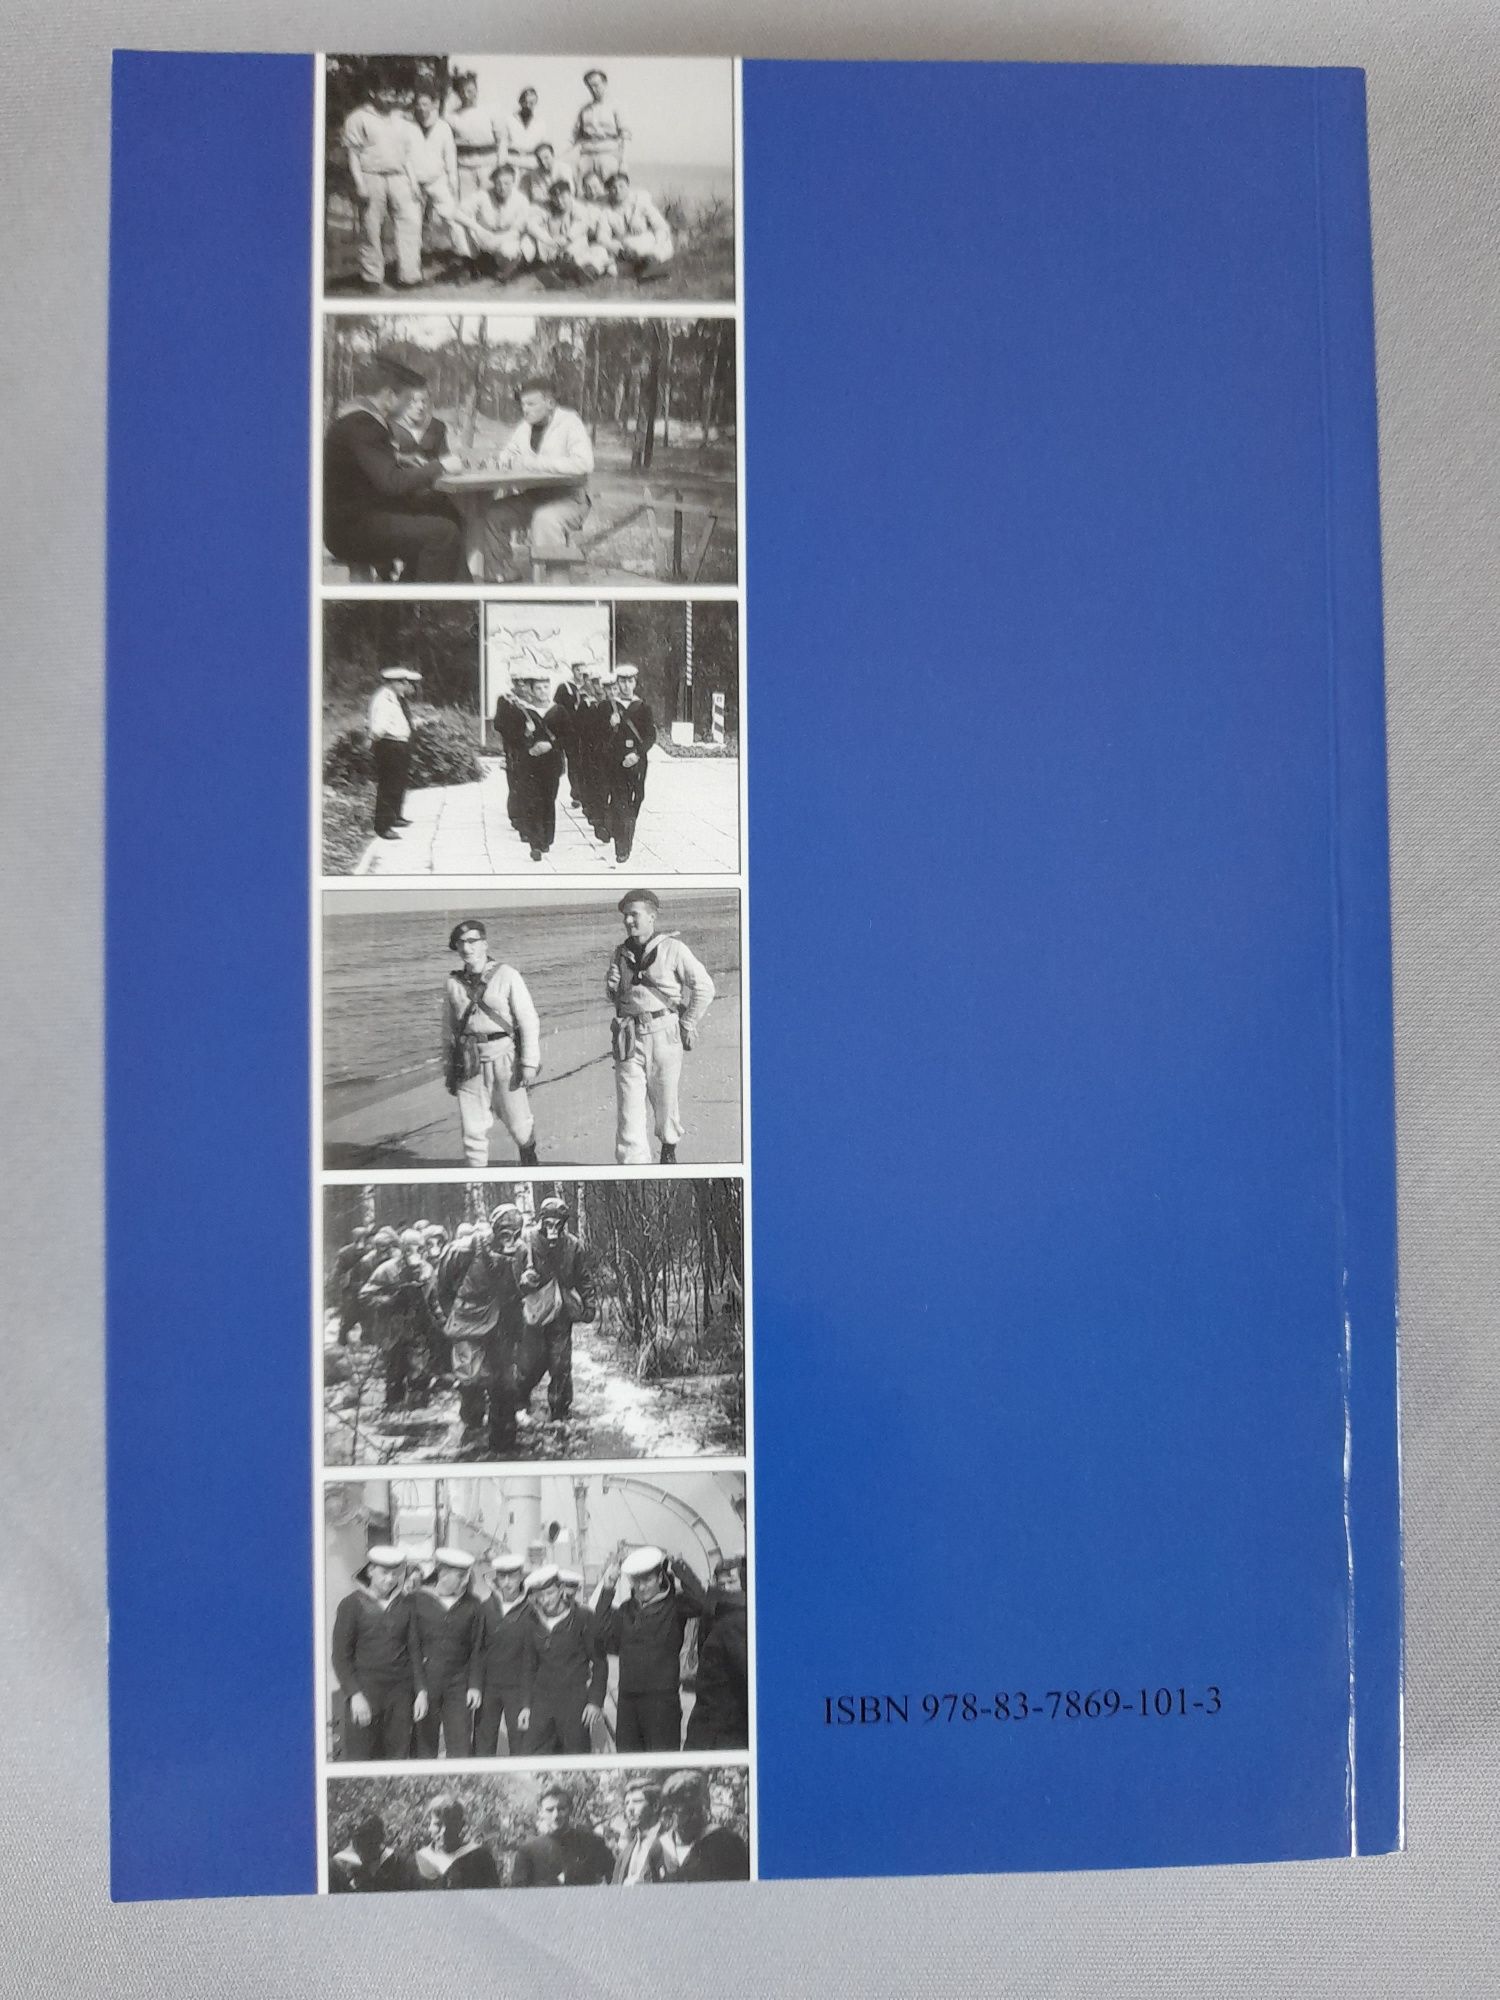 Książka "Klerycy - Marynarze Westerplatte "